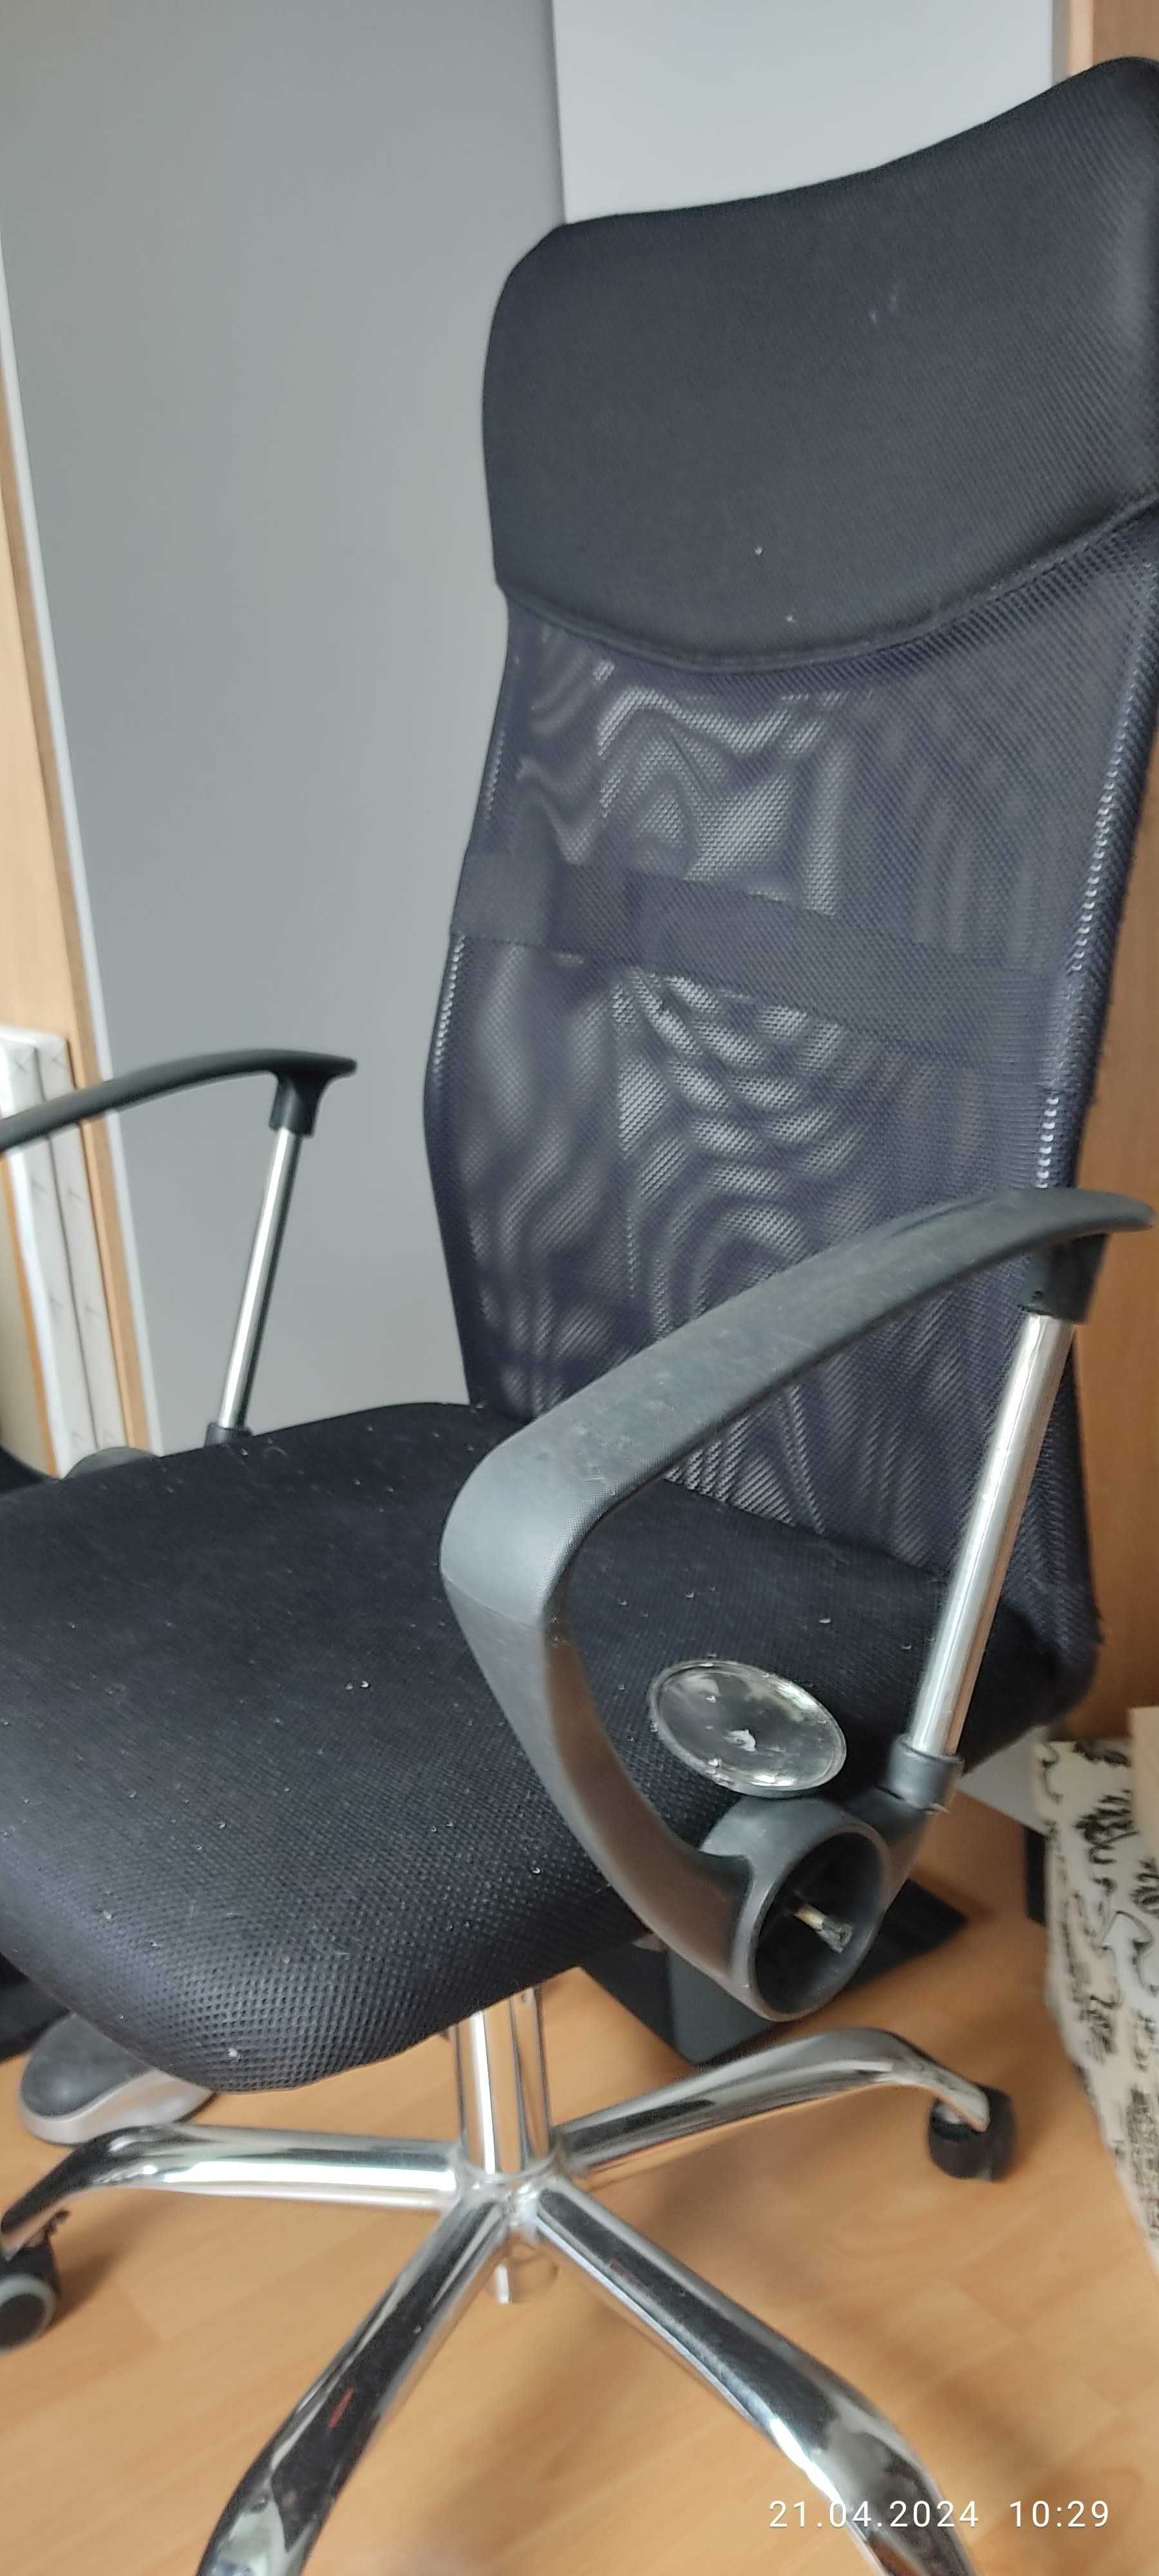 krzesło regulowane wysokie 2 szt za 100 zł